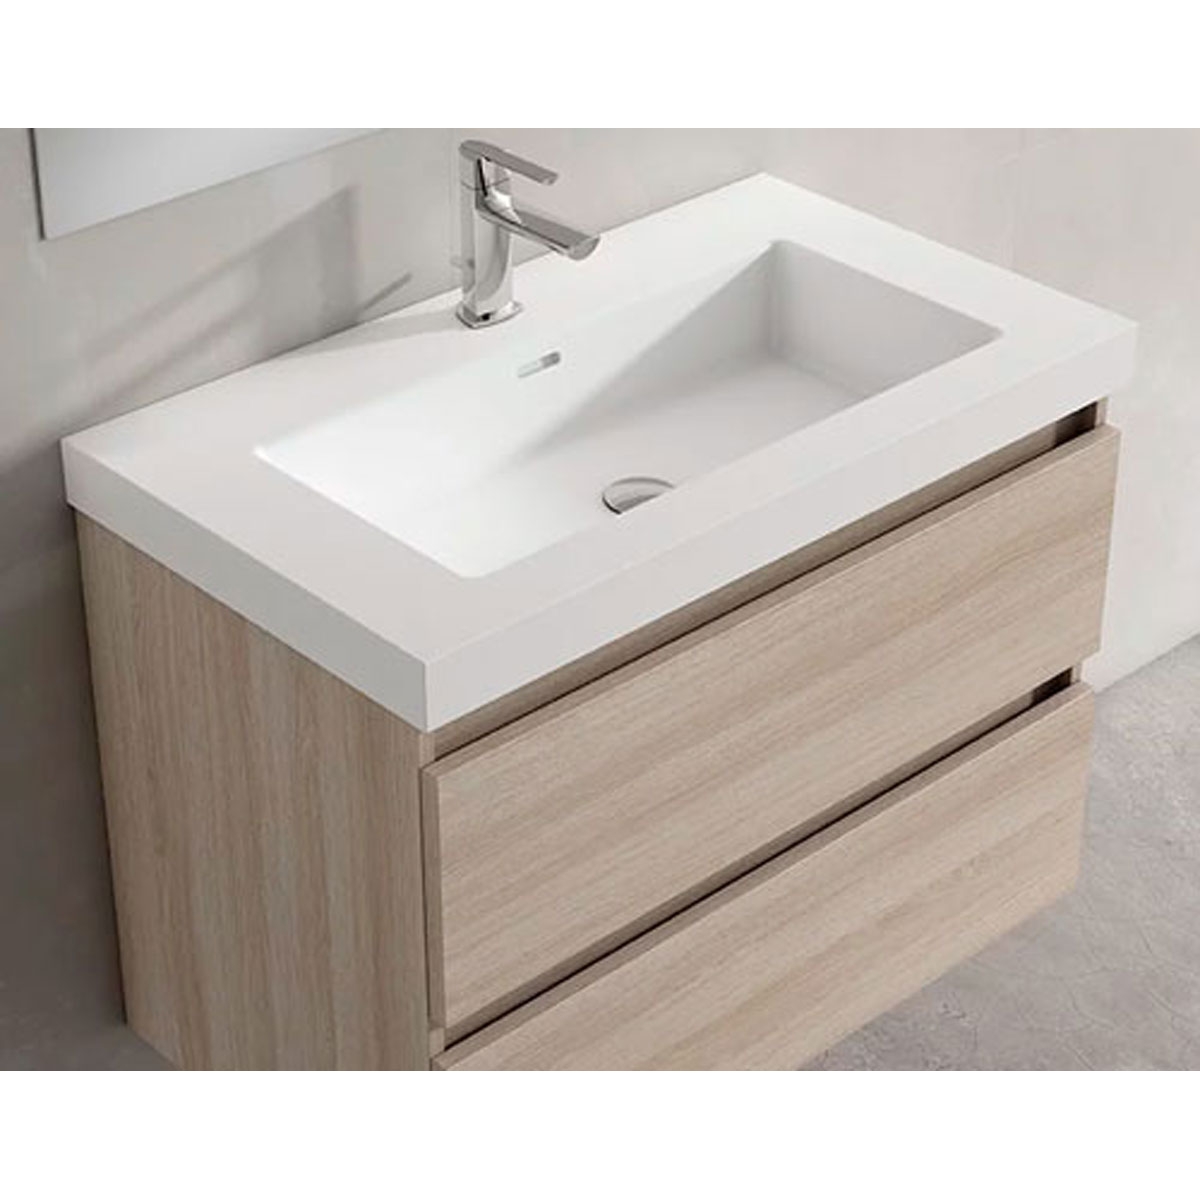 Mueble de baño de suelo de 100 cm con 2 cajones con lavabo integrado acabado crudo Modelo Granadae